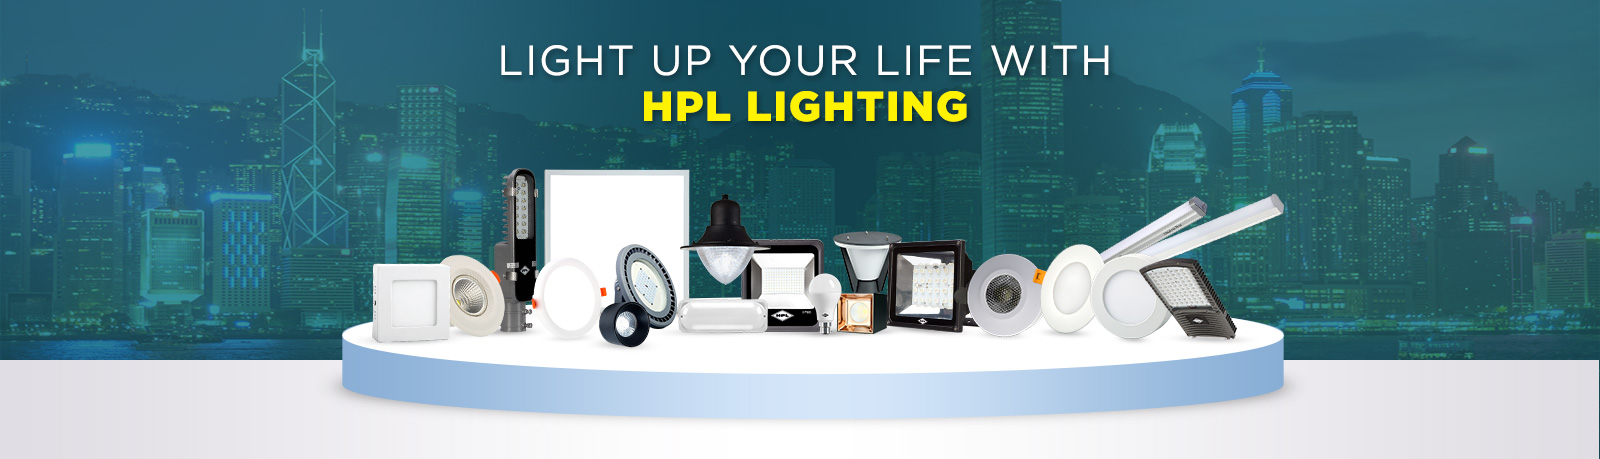 HPL Lighting